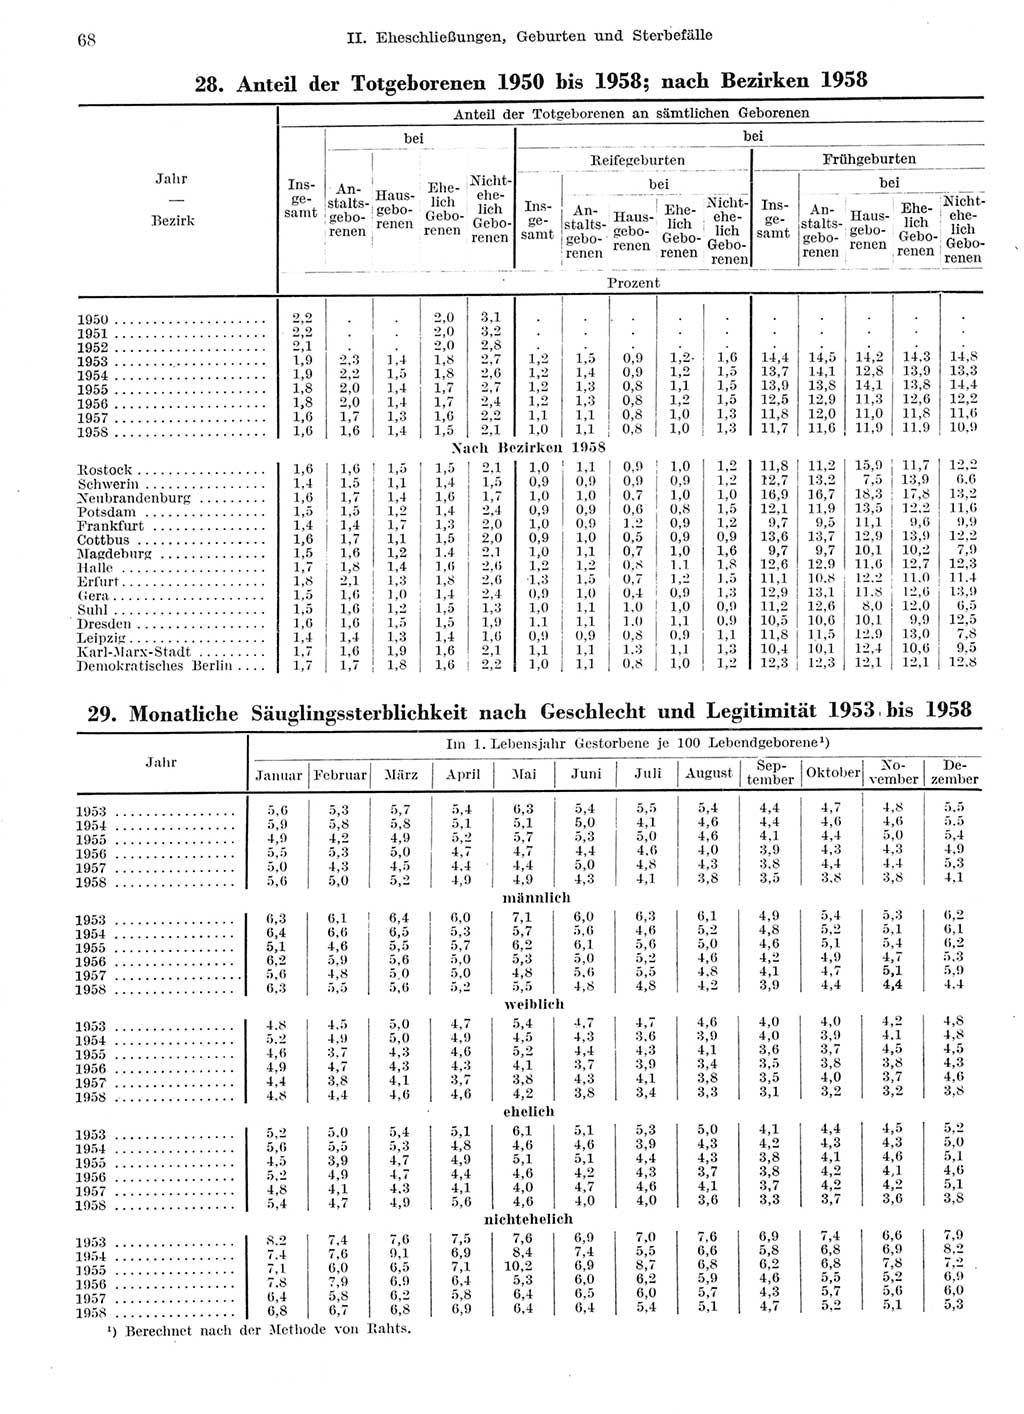 Statistisches Jahrbuch der Deutschen Demokratischen Republik (DDR) 1959, Seite 68 (Stat. Jb. DDR 1959, S. 68)